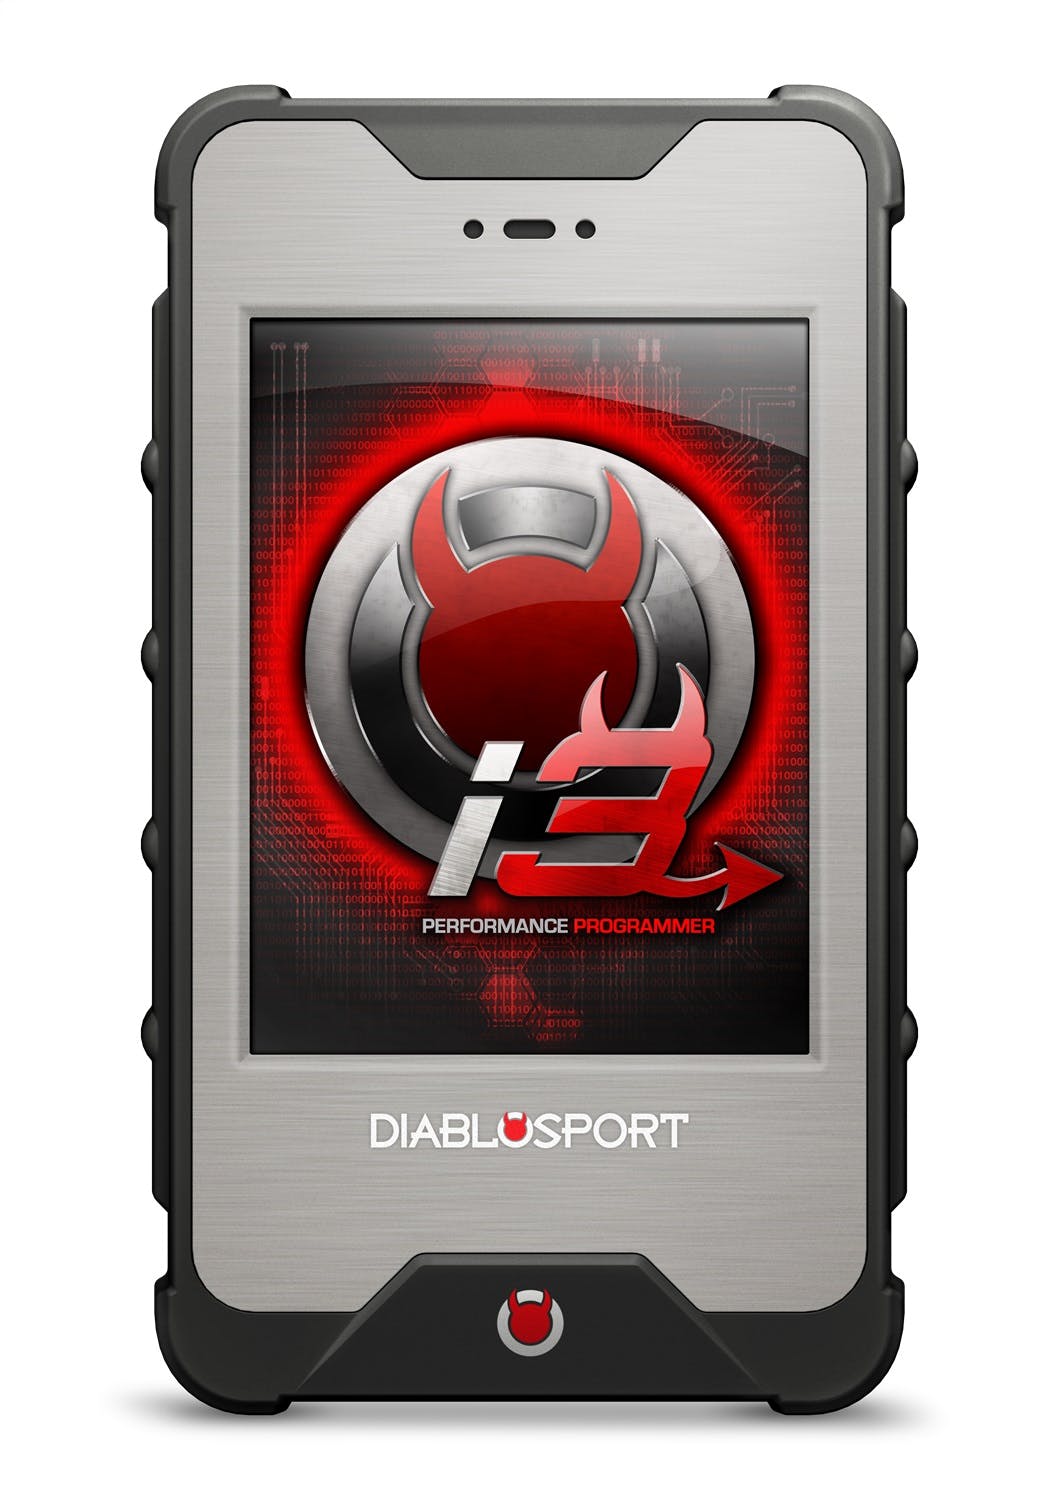 DiabloSport 8320-R inTune3 Plat 15+ Char/Chal PCM Swap